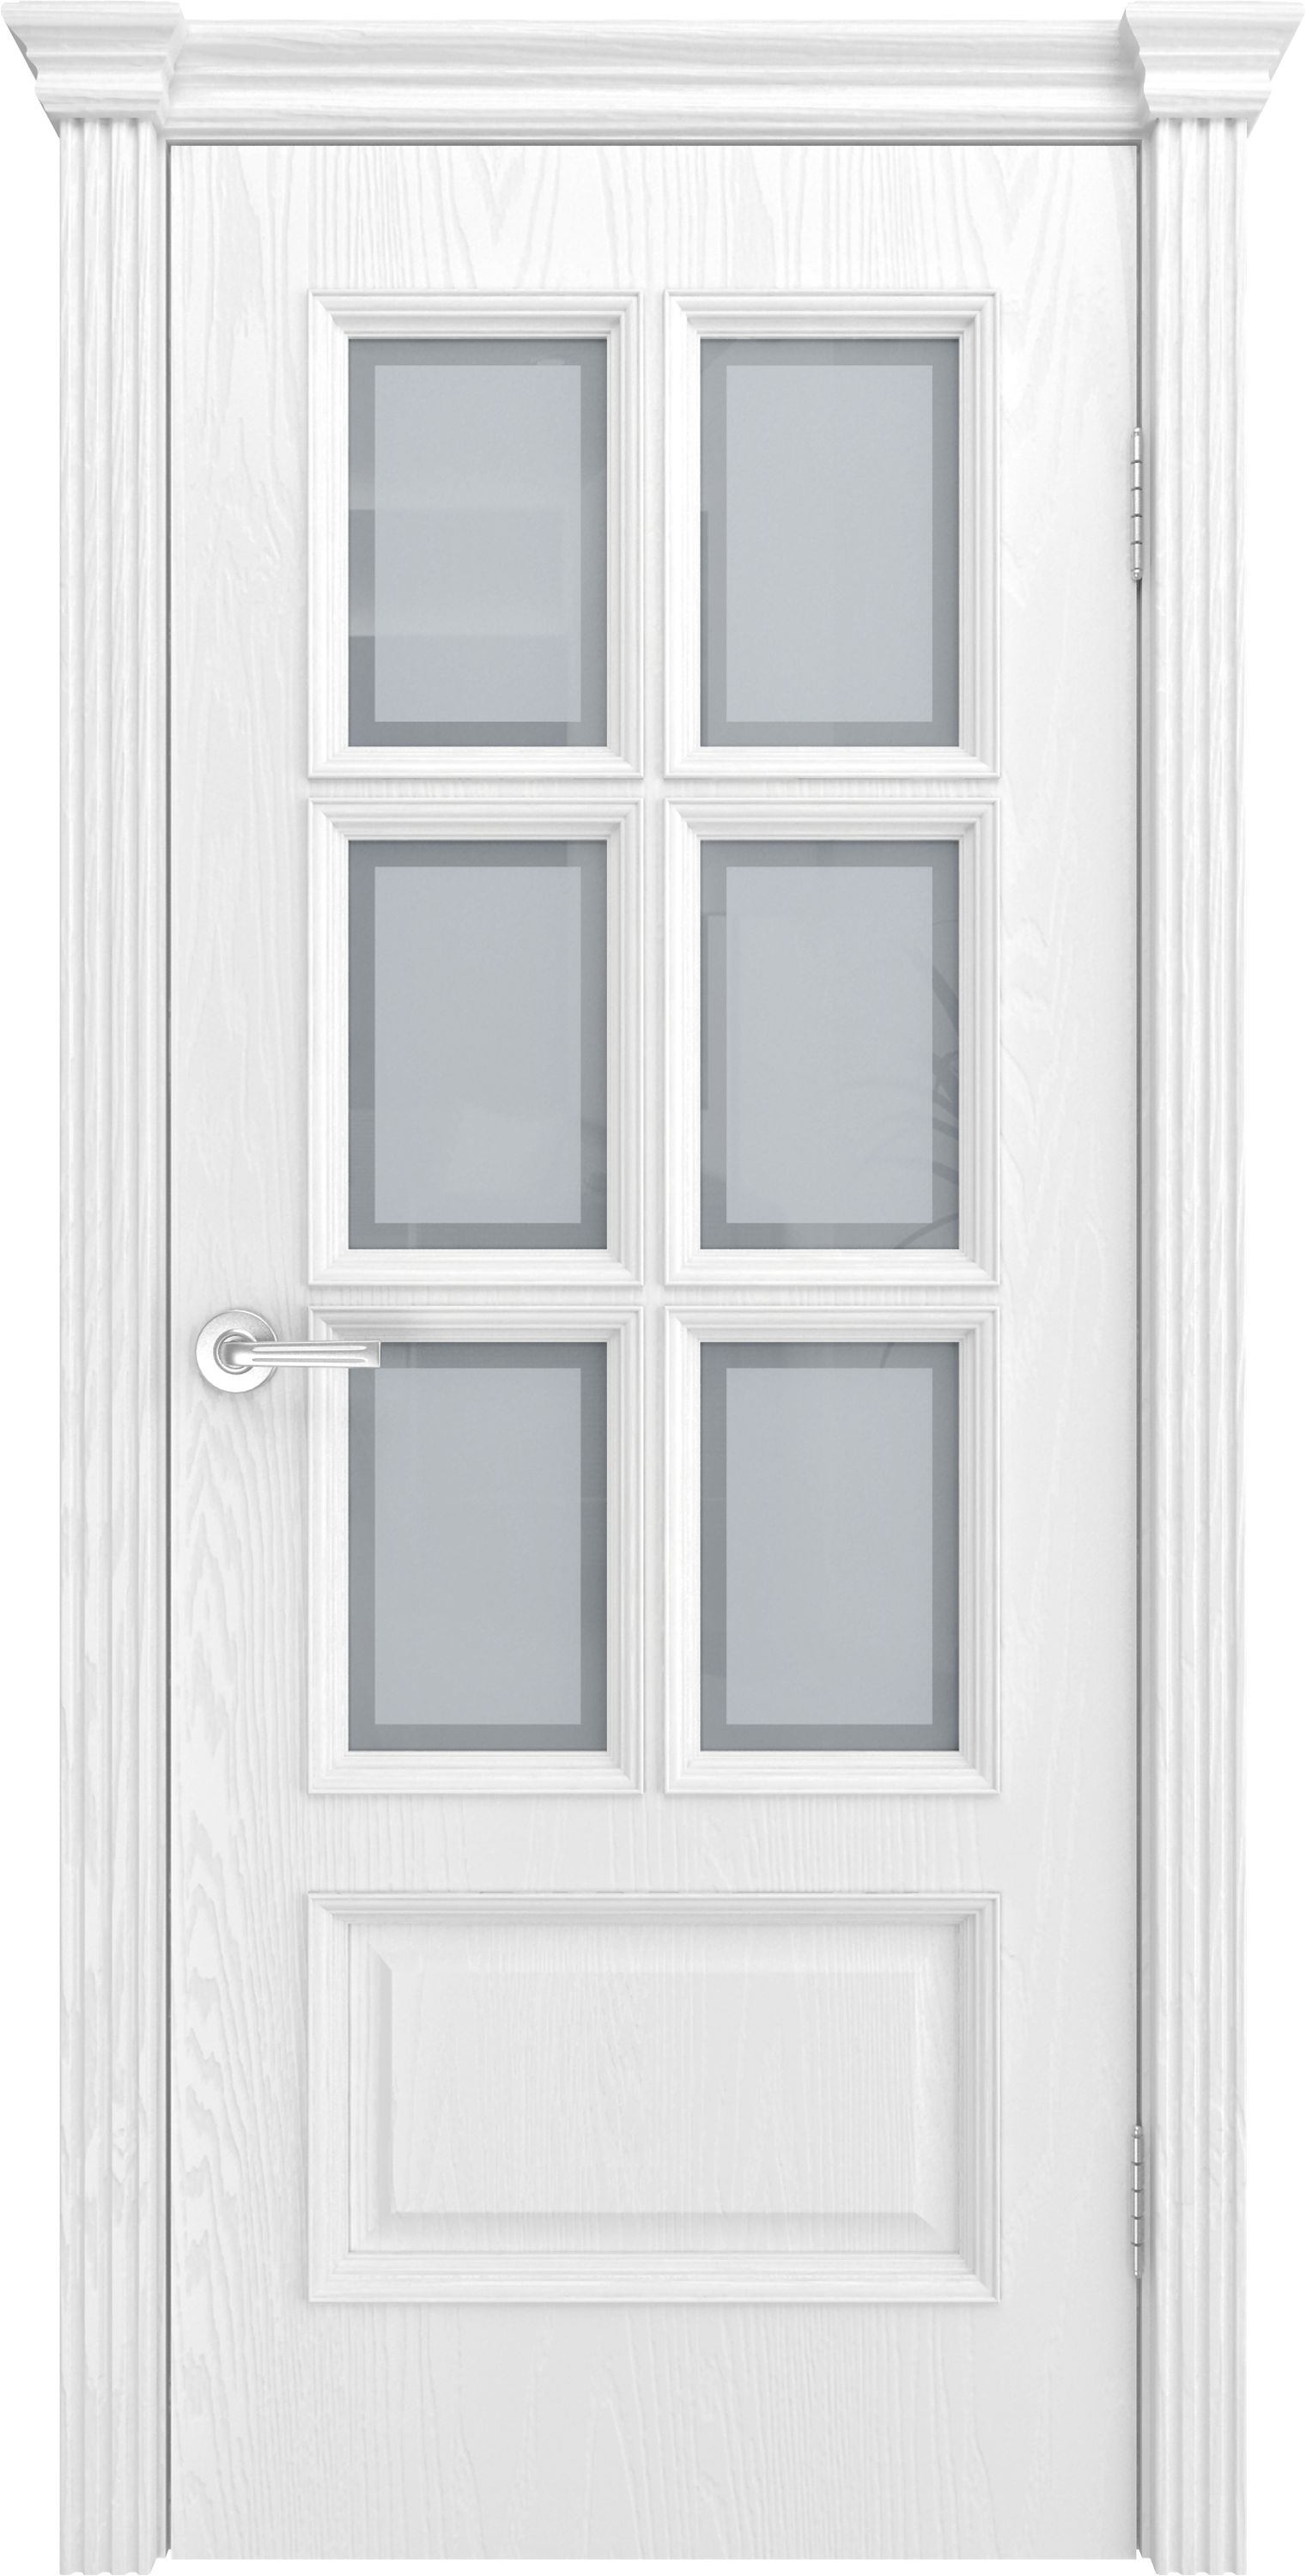 Двери шпонированные ТЕКОНА Фрейм 10 со стеклом Ясень белоснежный размер 200 х 60 см. артикул F0000070755